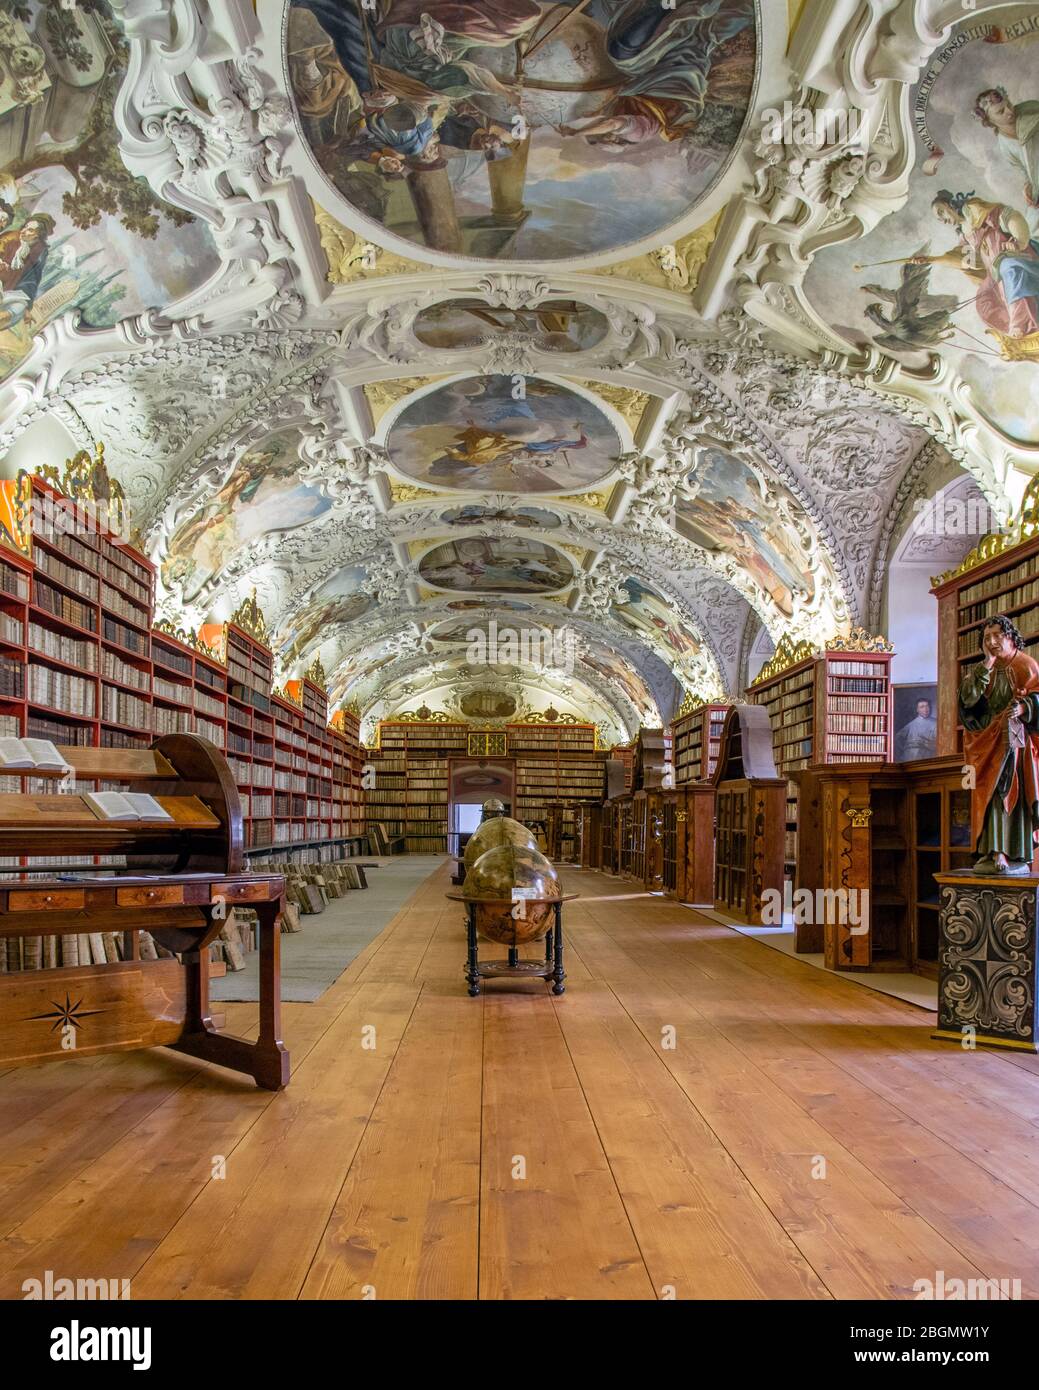 Una vista lungo la famosa Sala lettura nella Biblioteca Strahov, Praga. Antiche tombe fiancheggiano le pareti sotto il soffitto, dai dettagli ornatissimi. Foto Stock